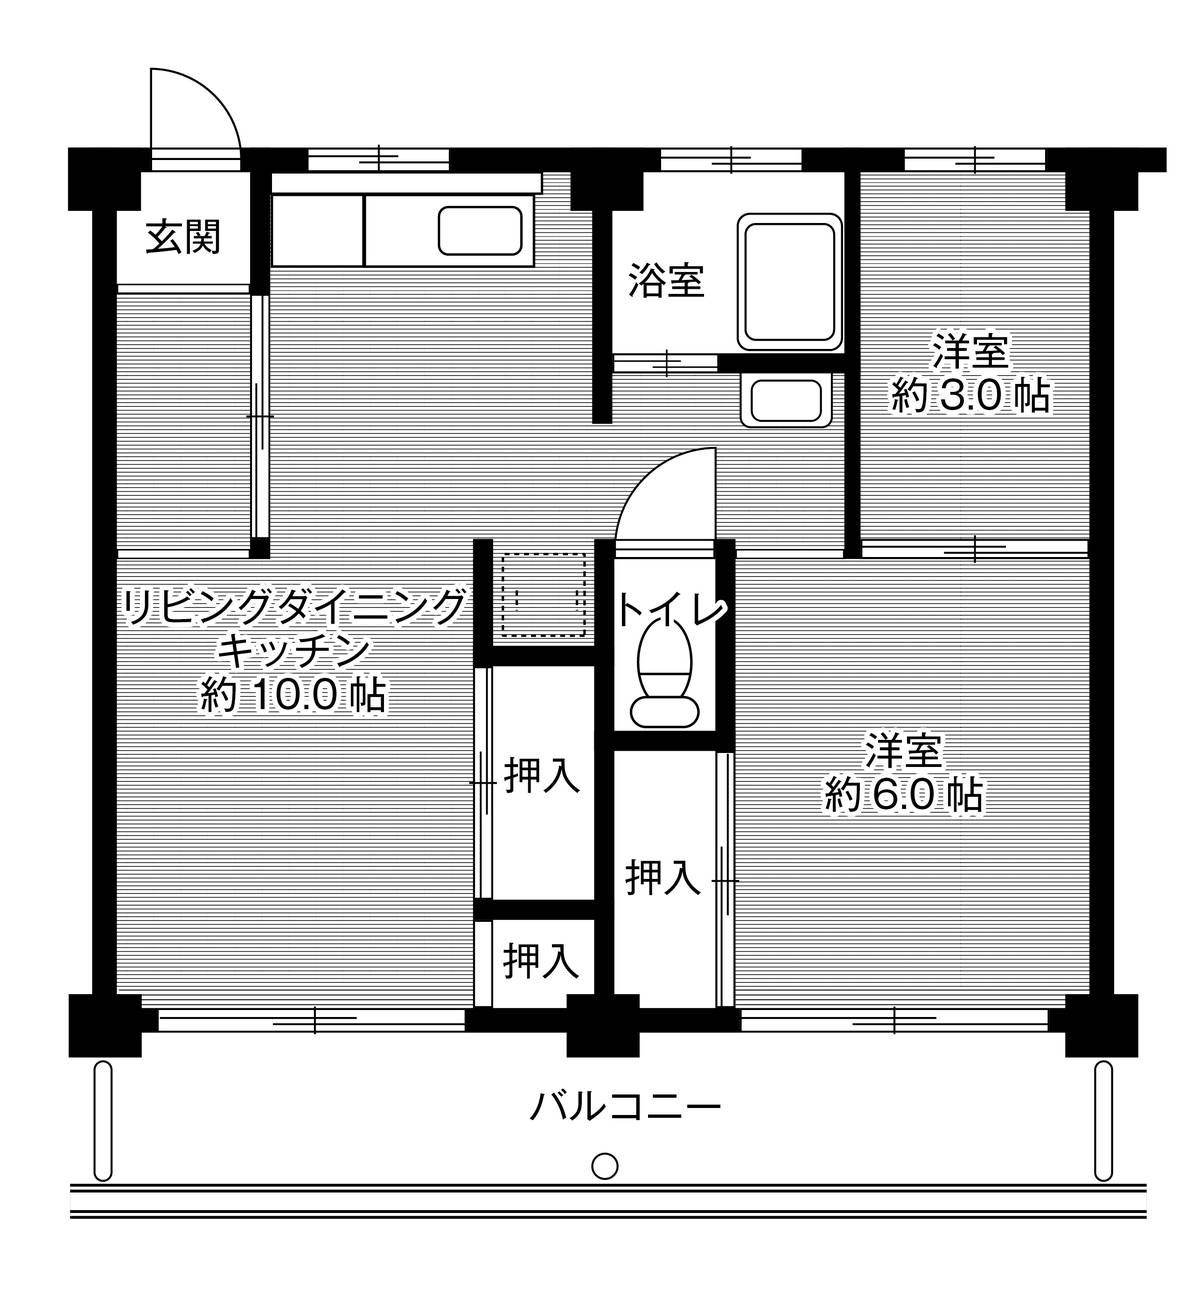 2LDK floorplan of Village House Kitayama in Seto-shi